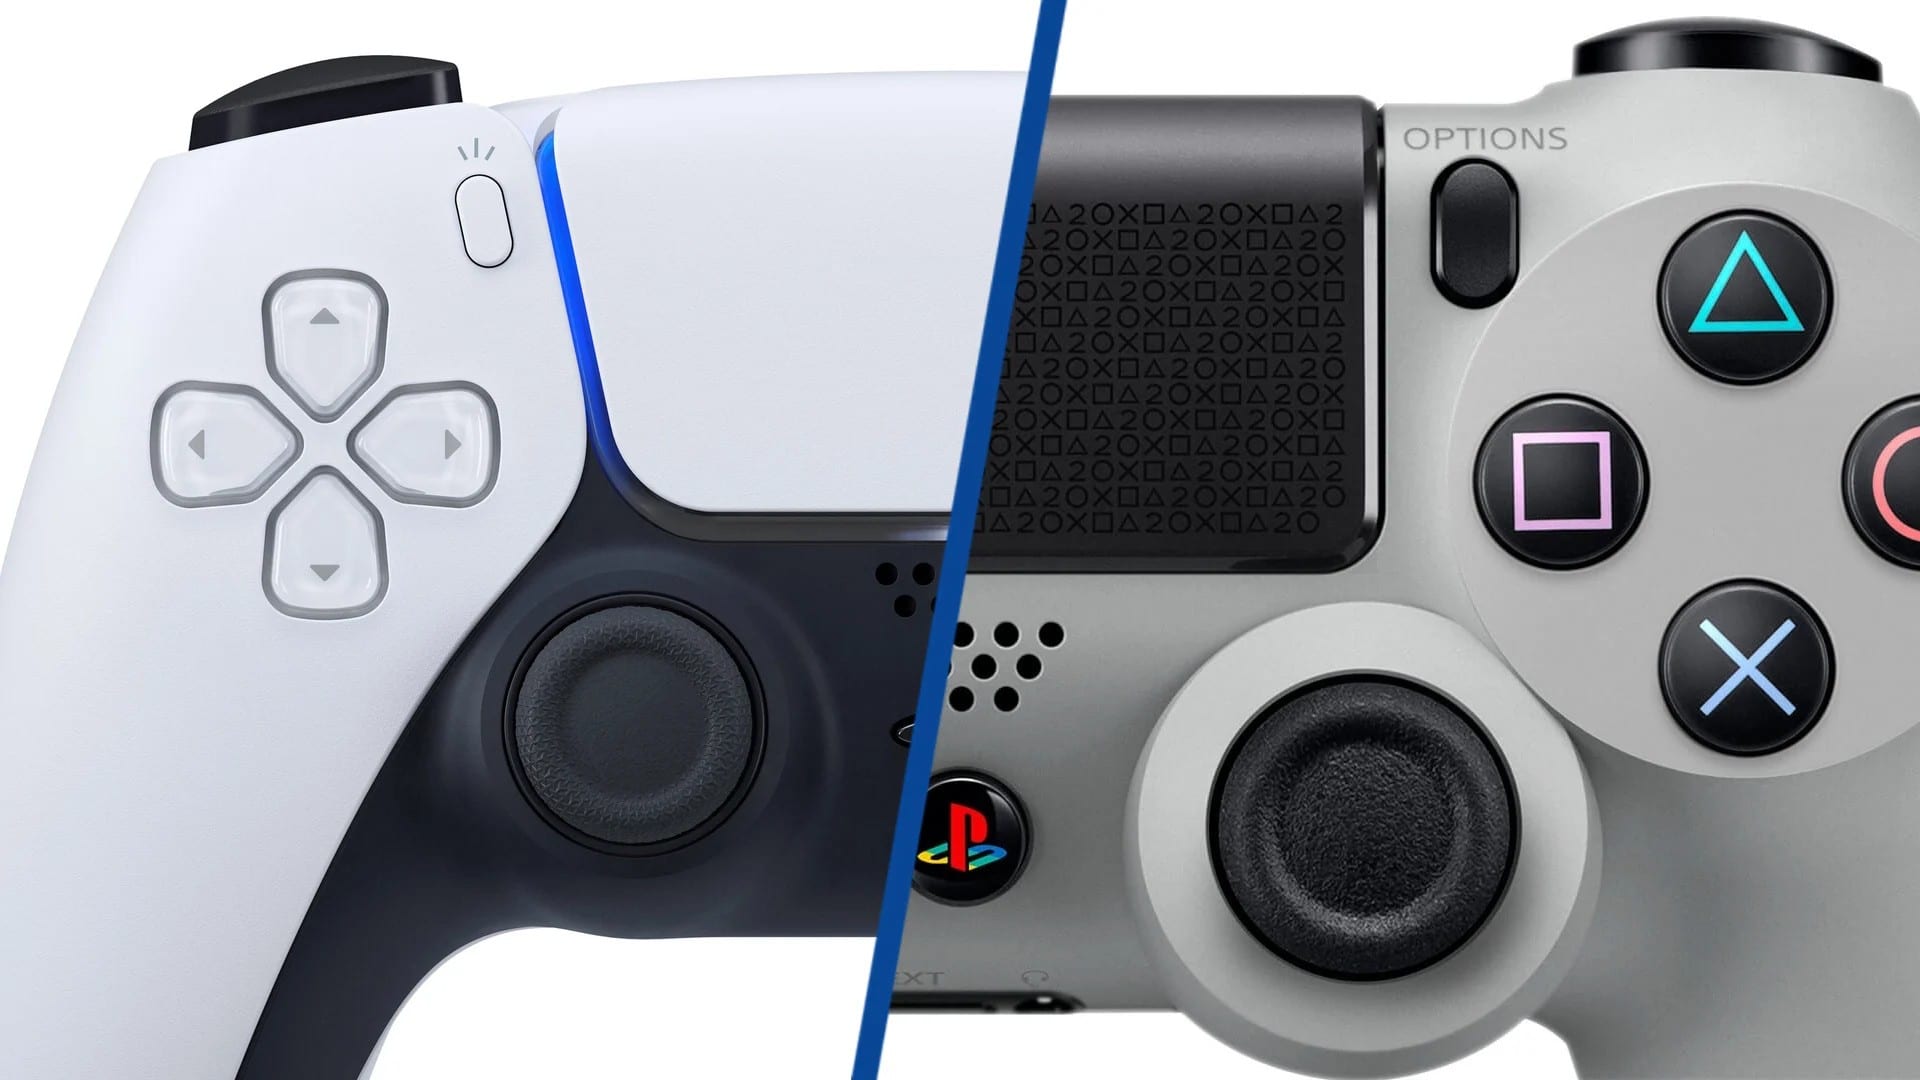 PS5 e Xbox Series: 8 jogos com upgrade grátis para os consoles - DeUmZoom